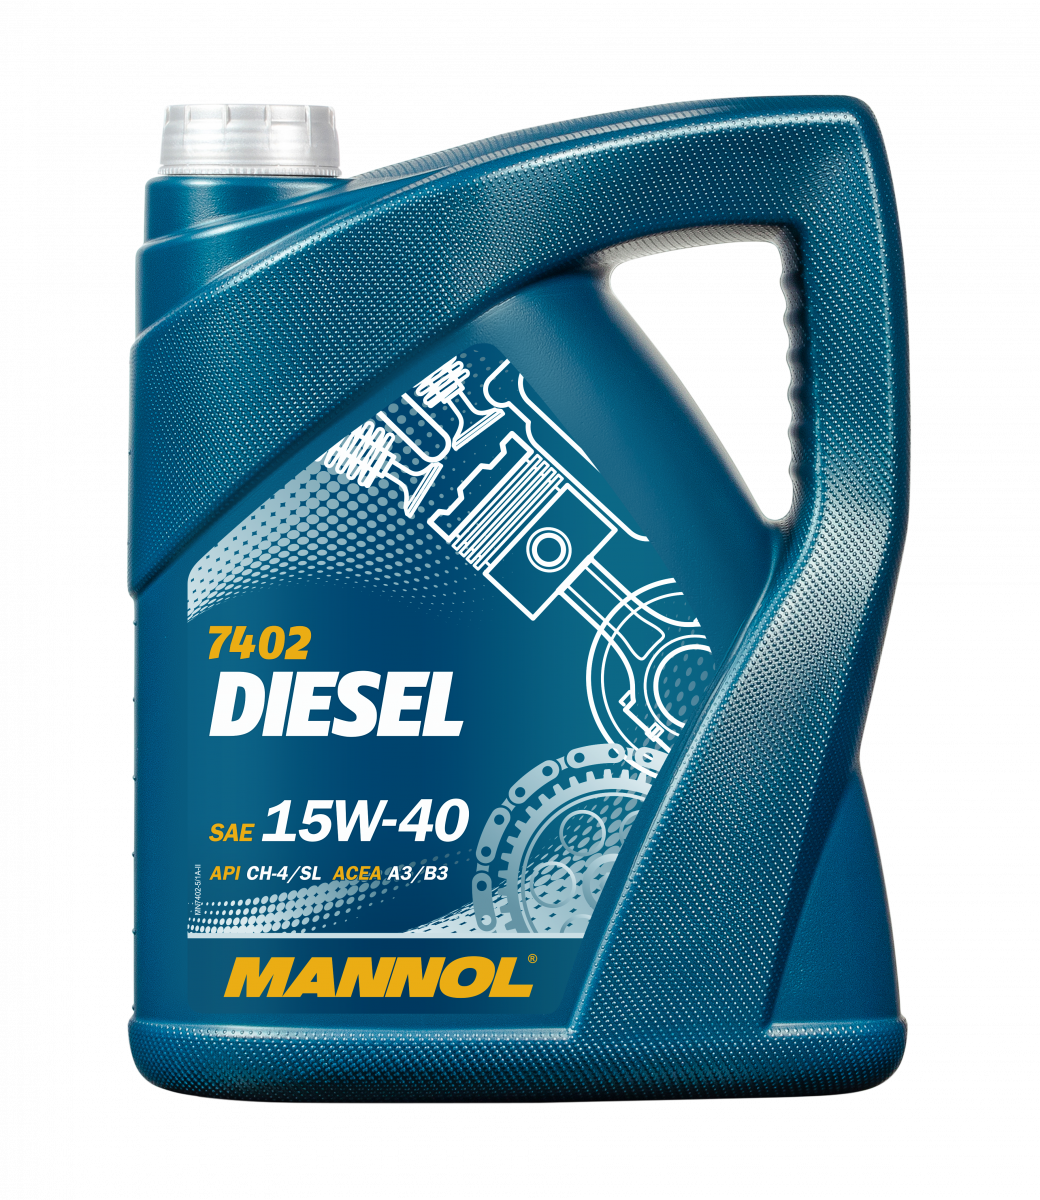 Mannol Diesel 15W-40 (5L)